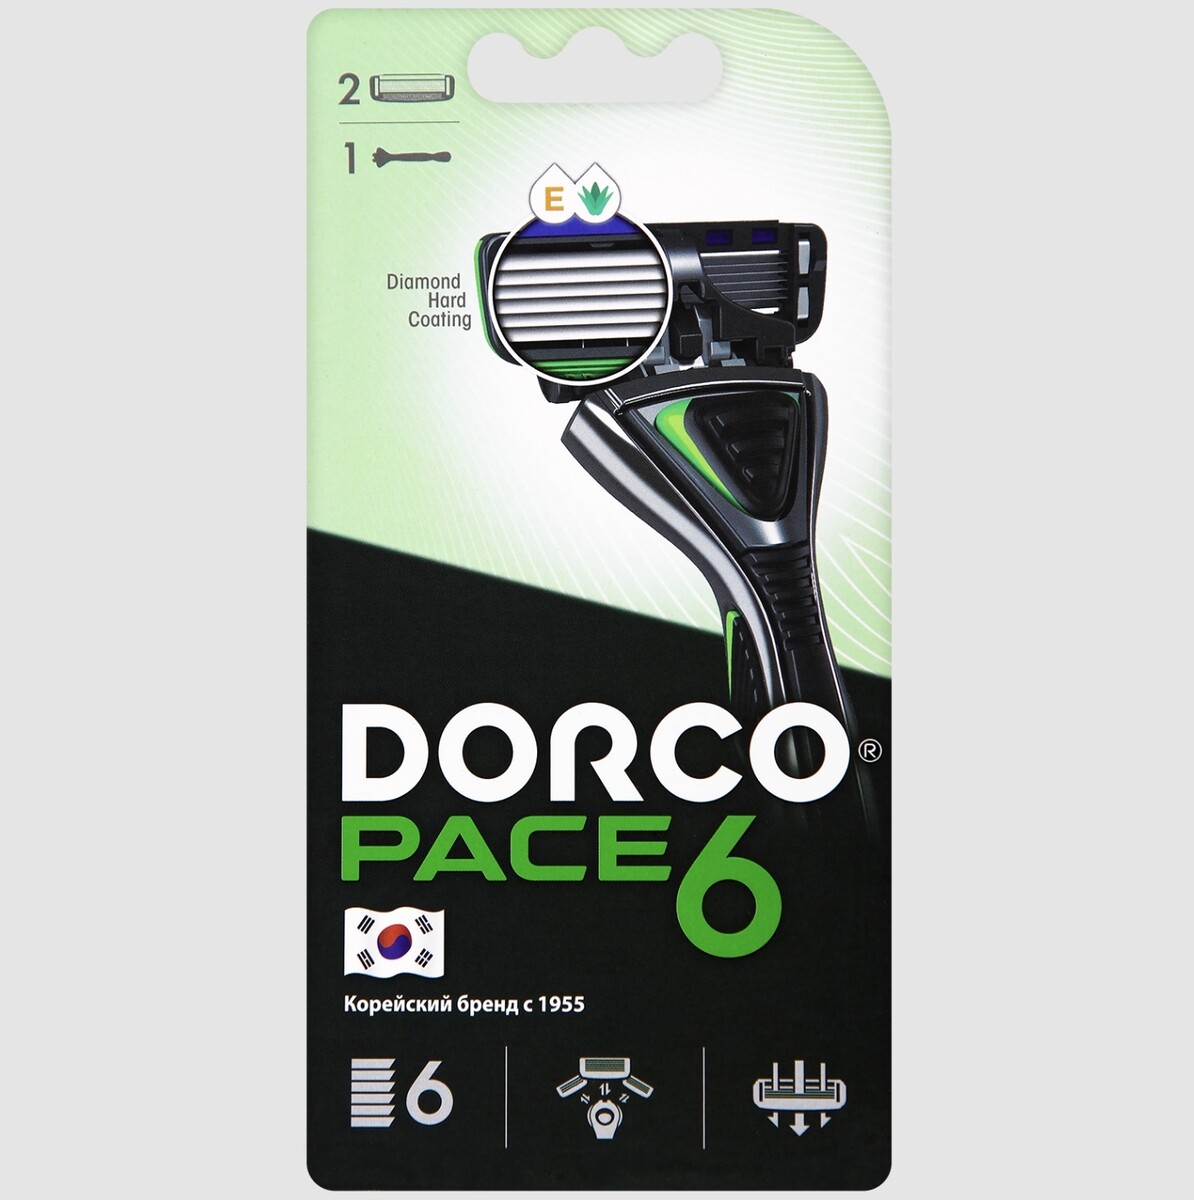 Dorco pace6 (станок+2's) система с 6лезвиями (ю.корея)